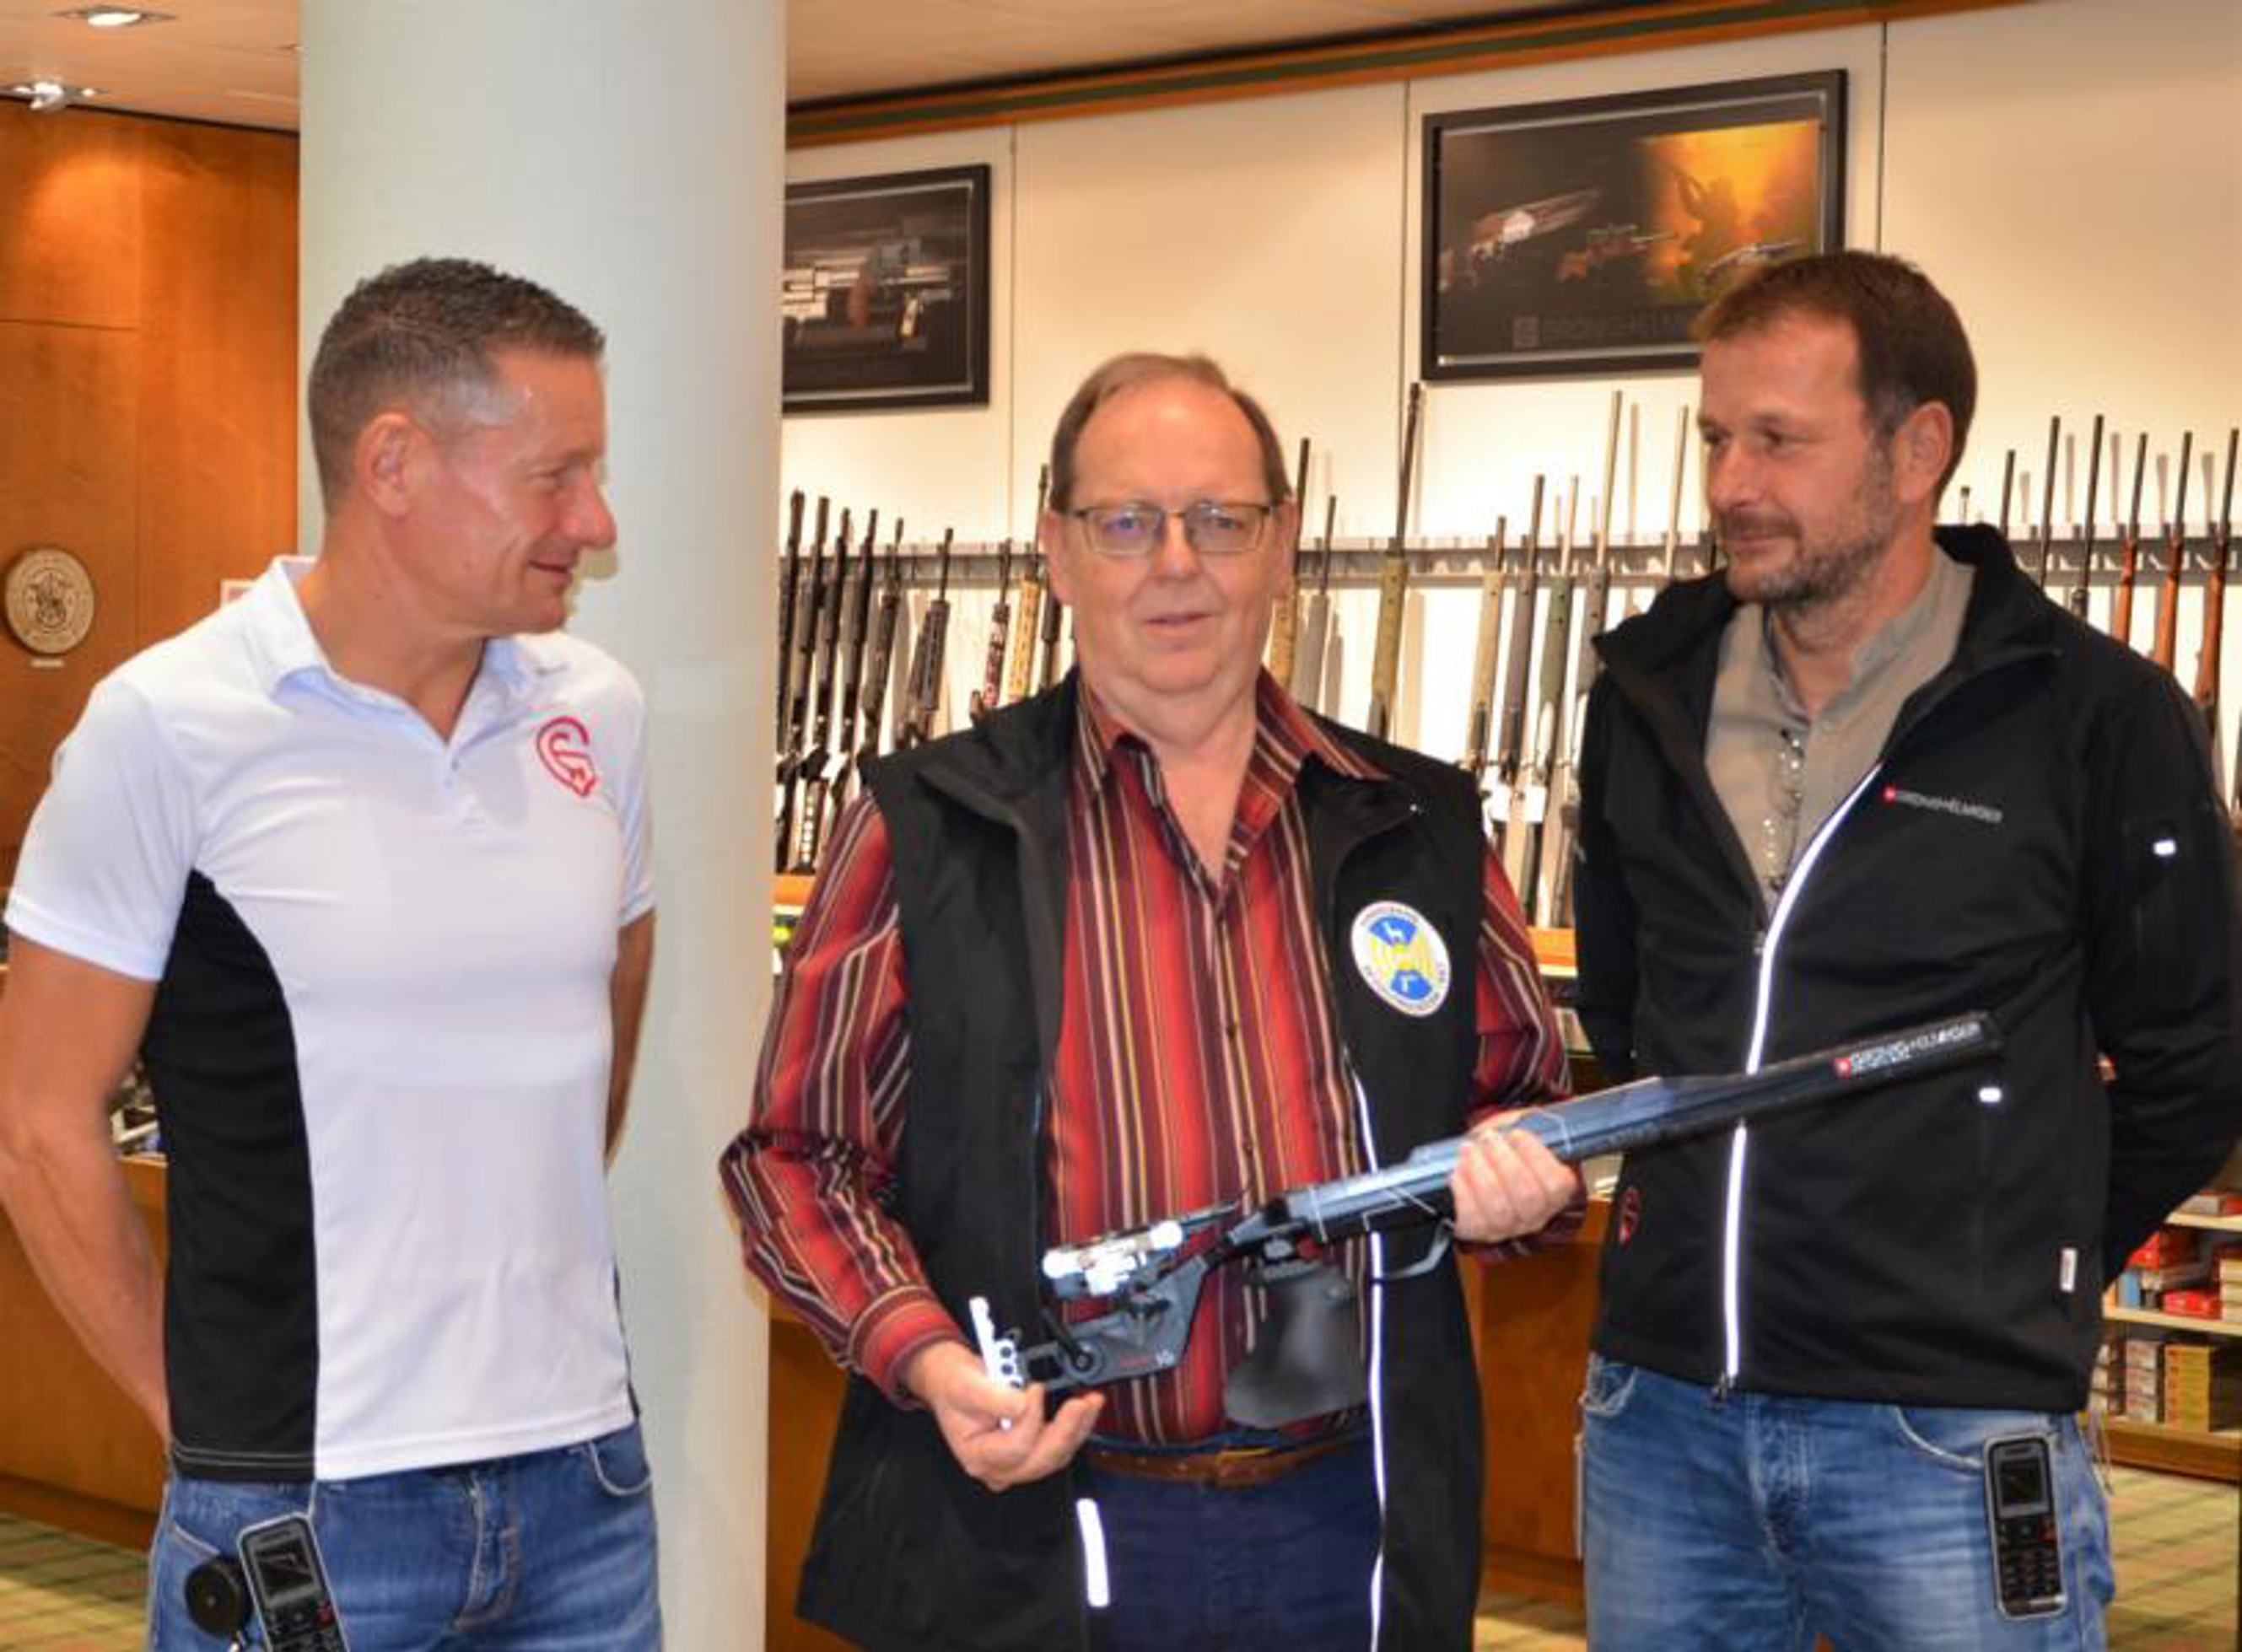 Daniel und Rolf Grünig bei der Preisübergabe an Gewinner Markus Rickli.